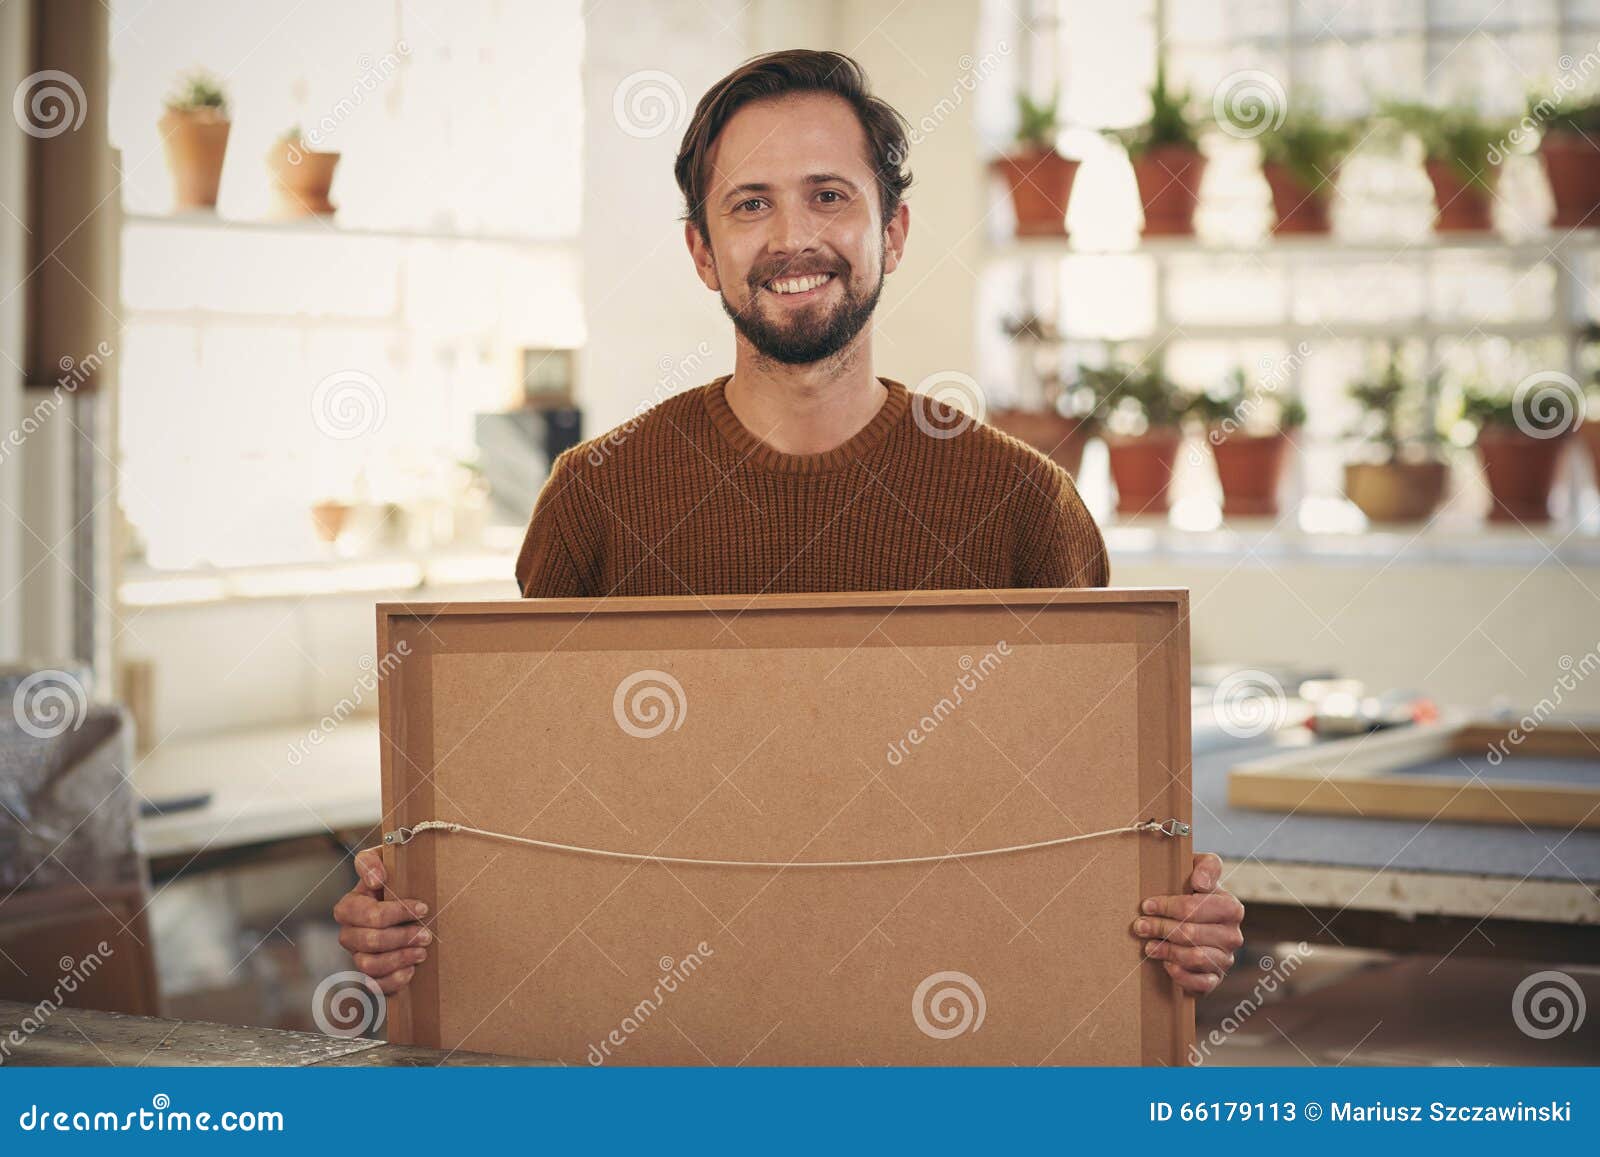 positive framer smiling his workshop holding a framed item